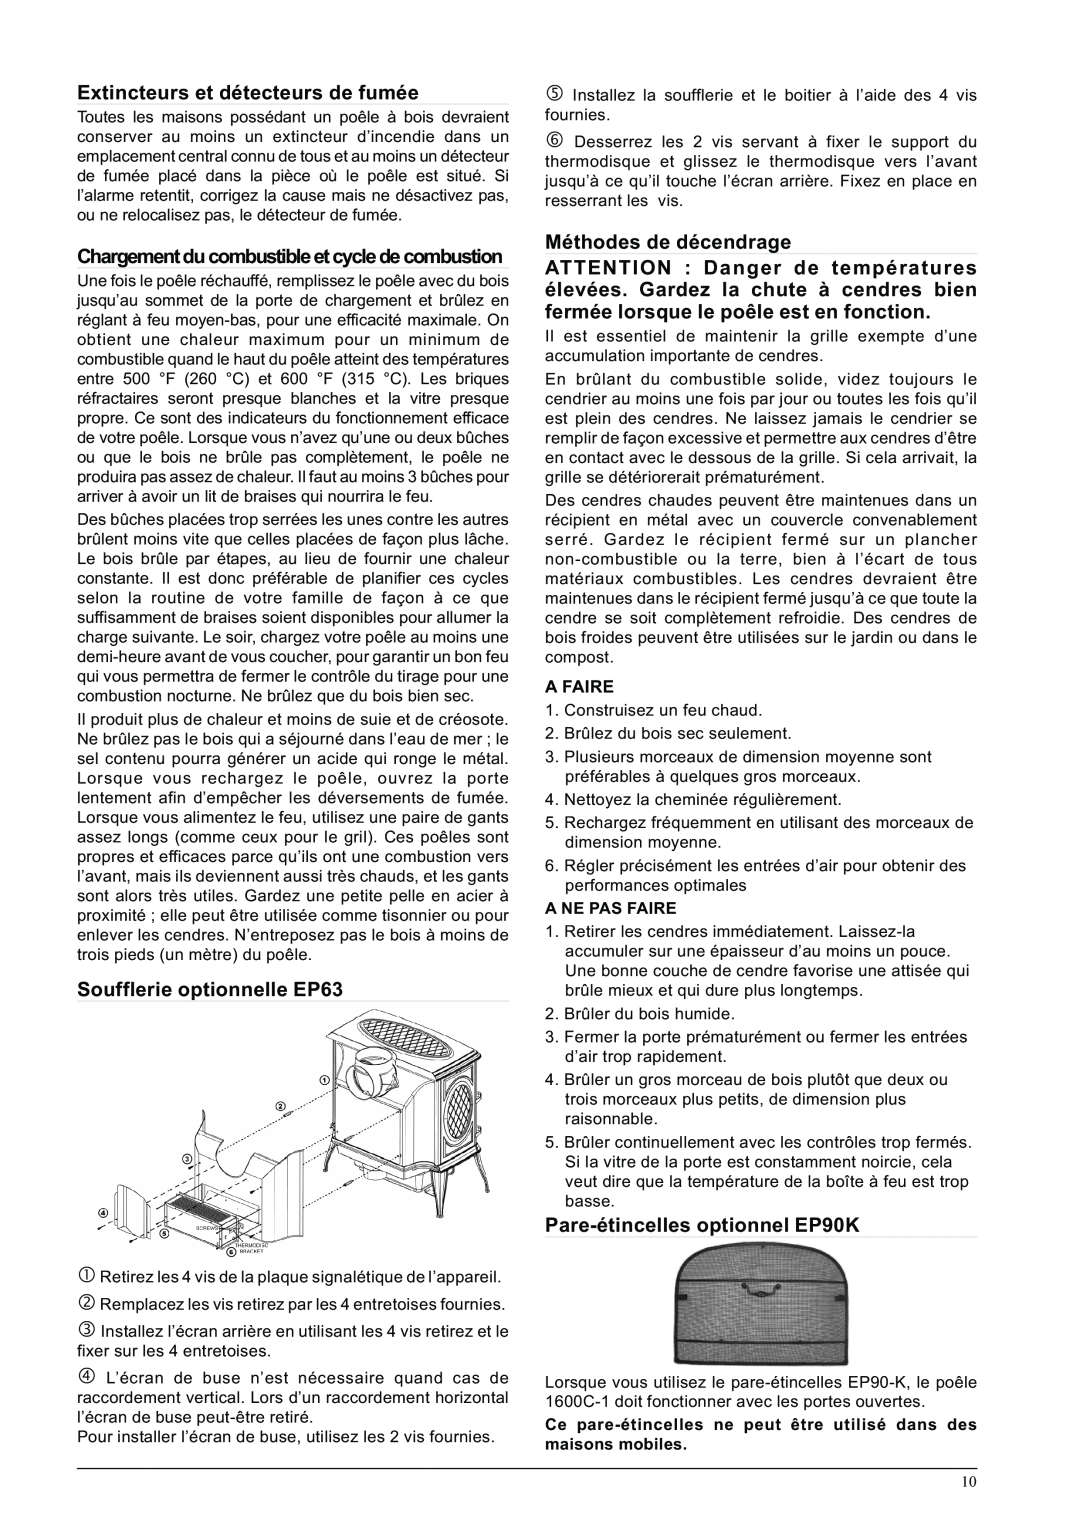 Napoleon Fireplaces 1600C-1 Extincteurs et détecteurs de fumée, Soufflerie optionnelle EP63, Méthodes de décendrage 